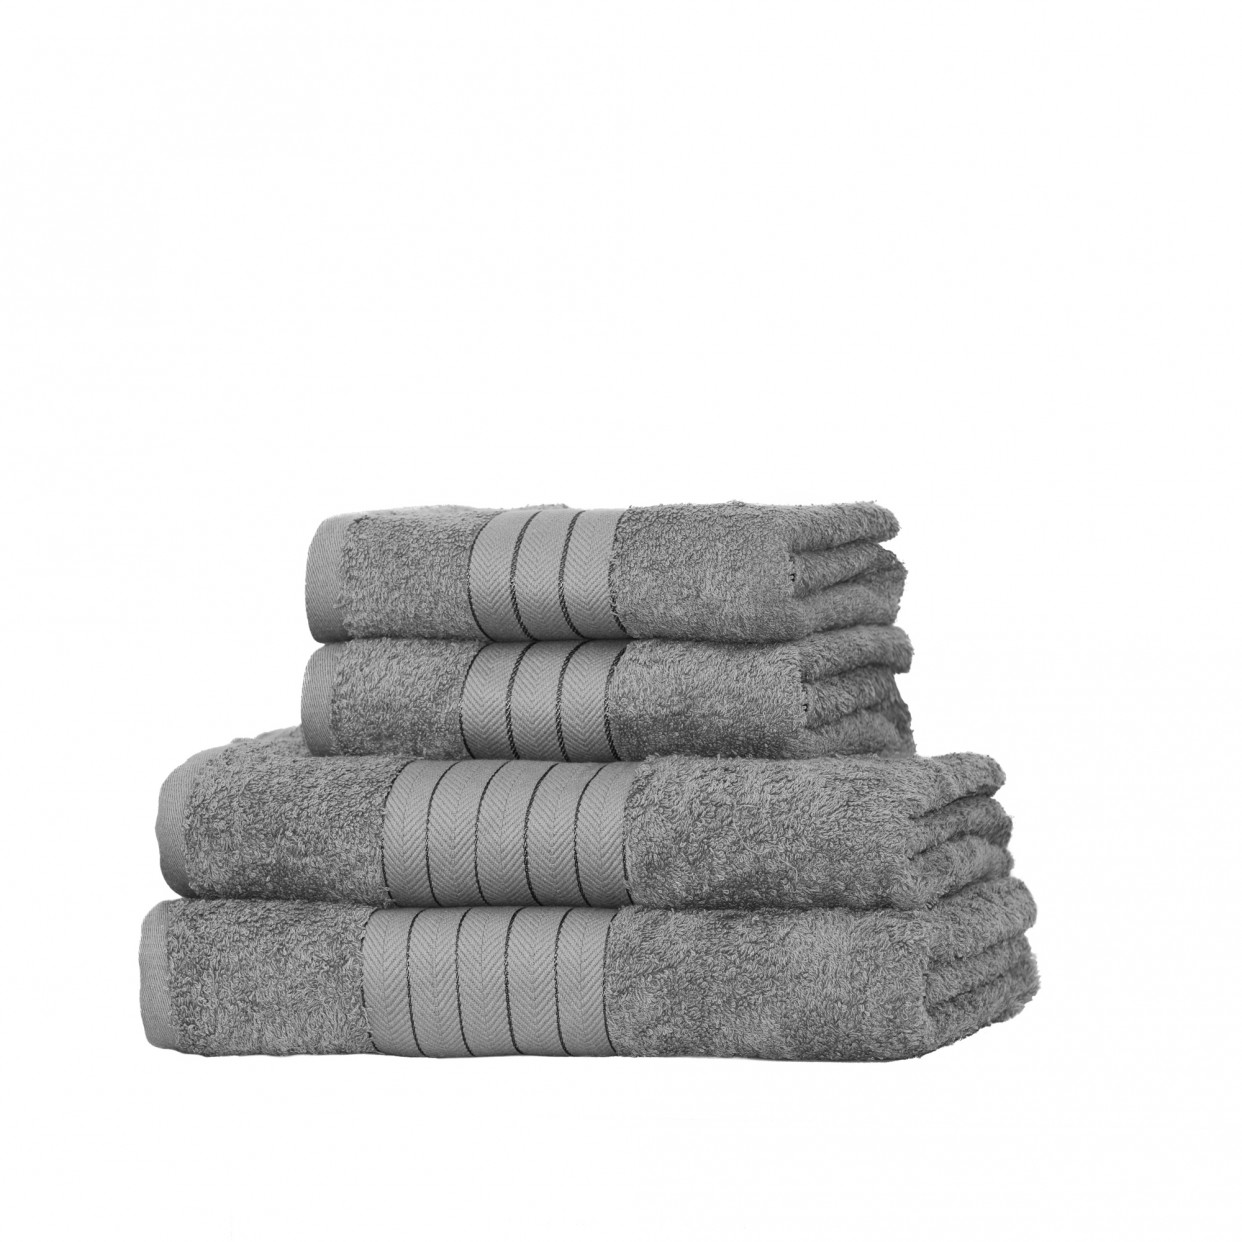 100% Cotton Soft Towel Bale 4 Piece Set - Silver>